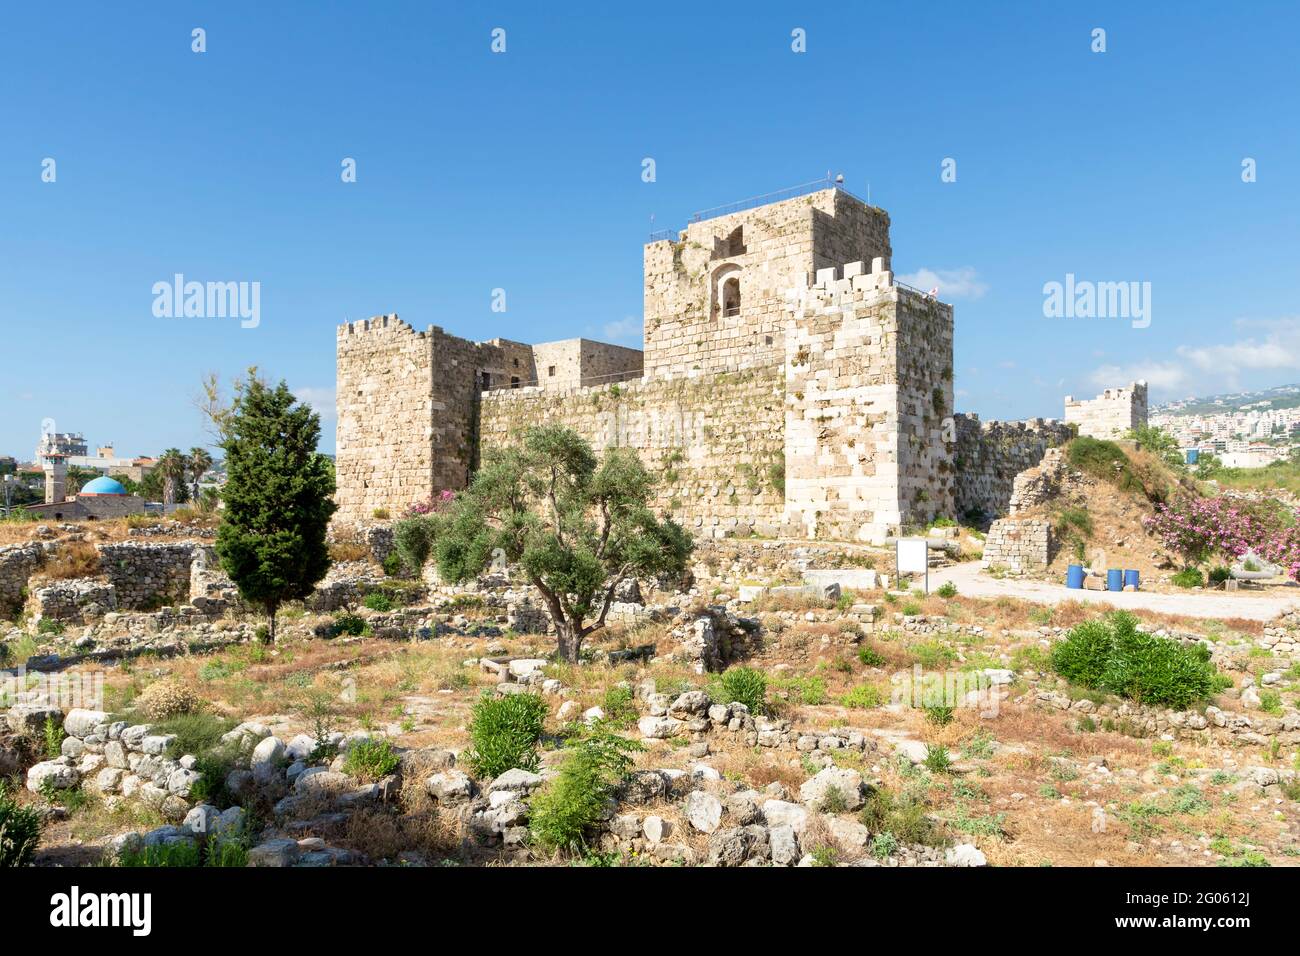 Citadelle de Byblos, château de Crusader, Jbeil, Liban Banque D'Images